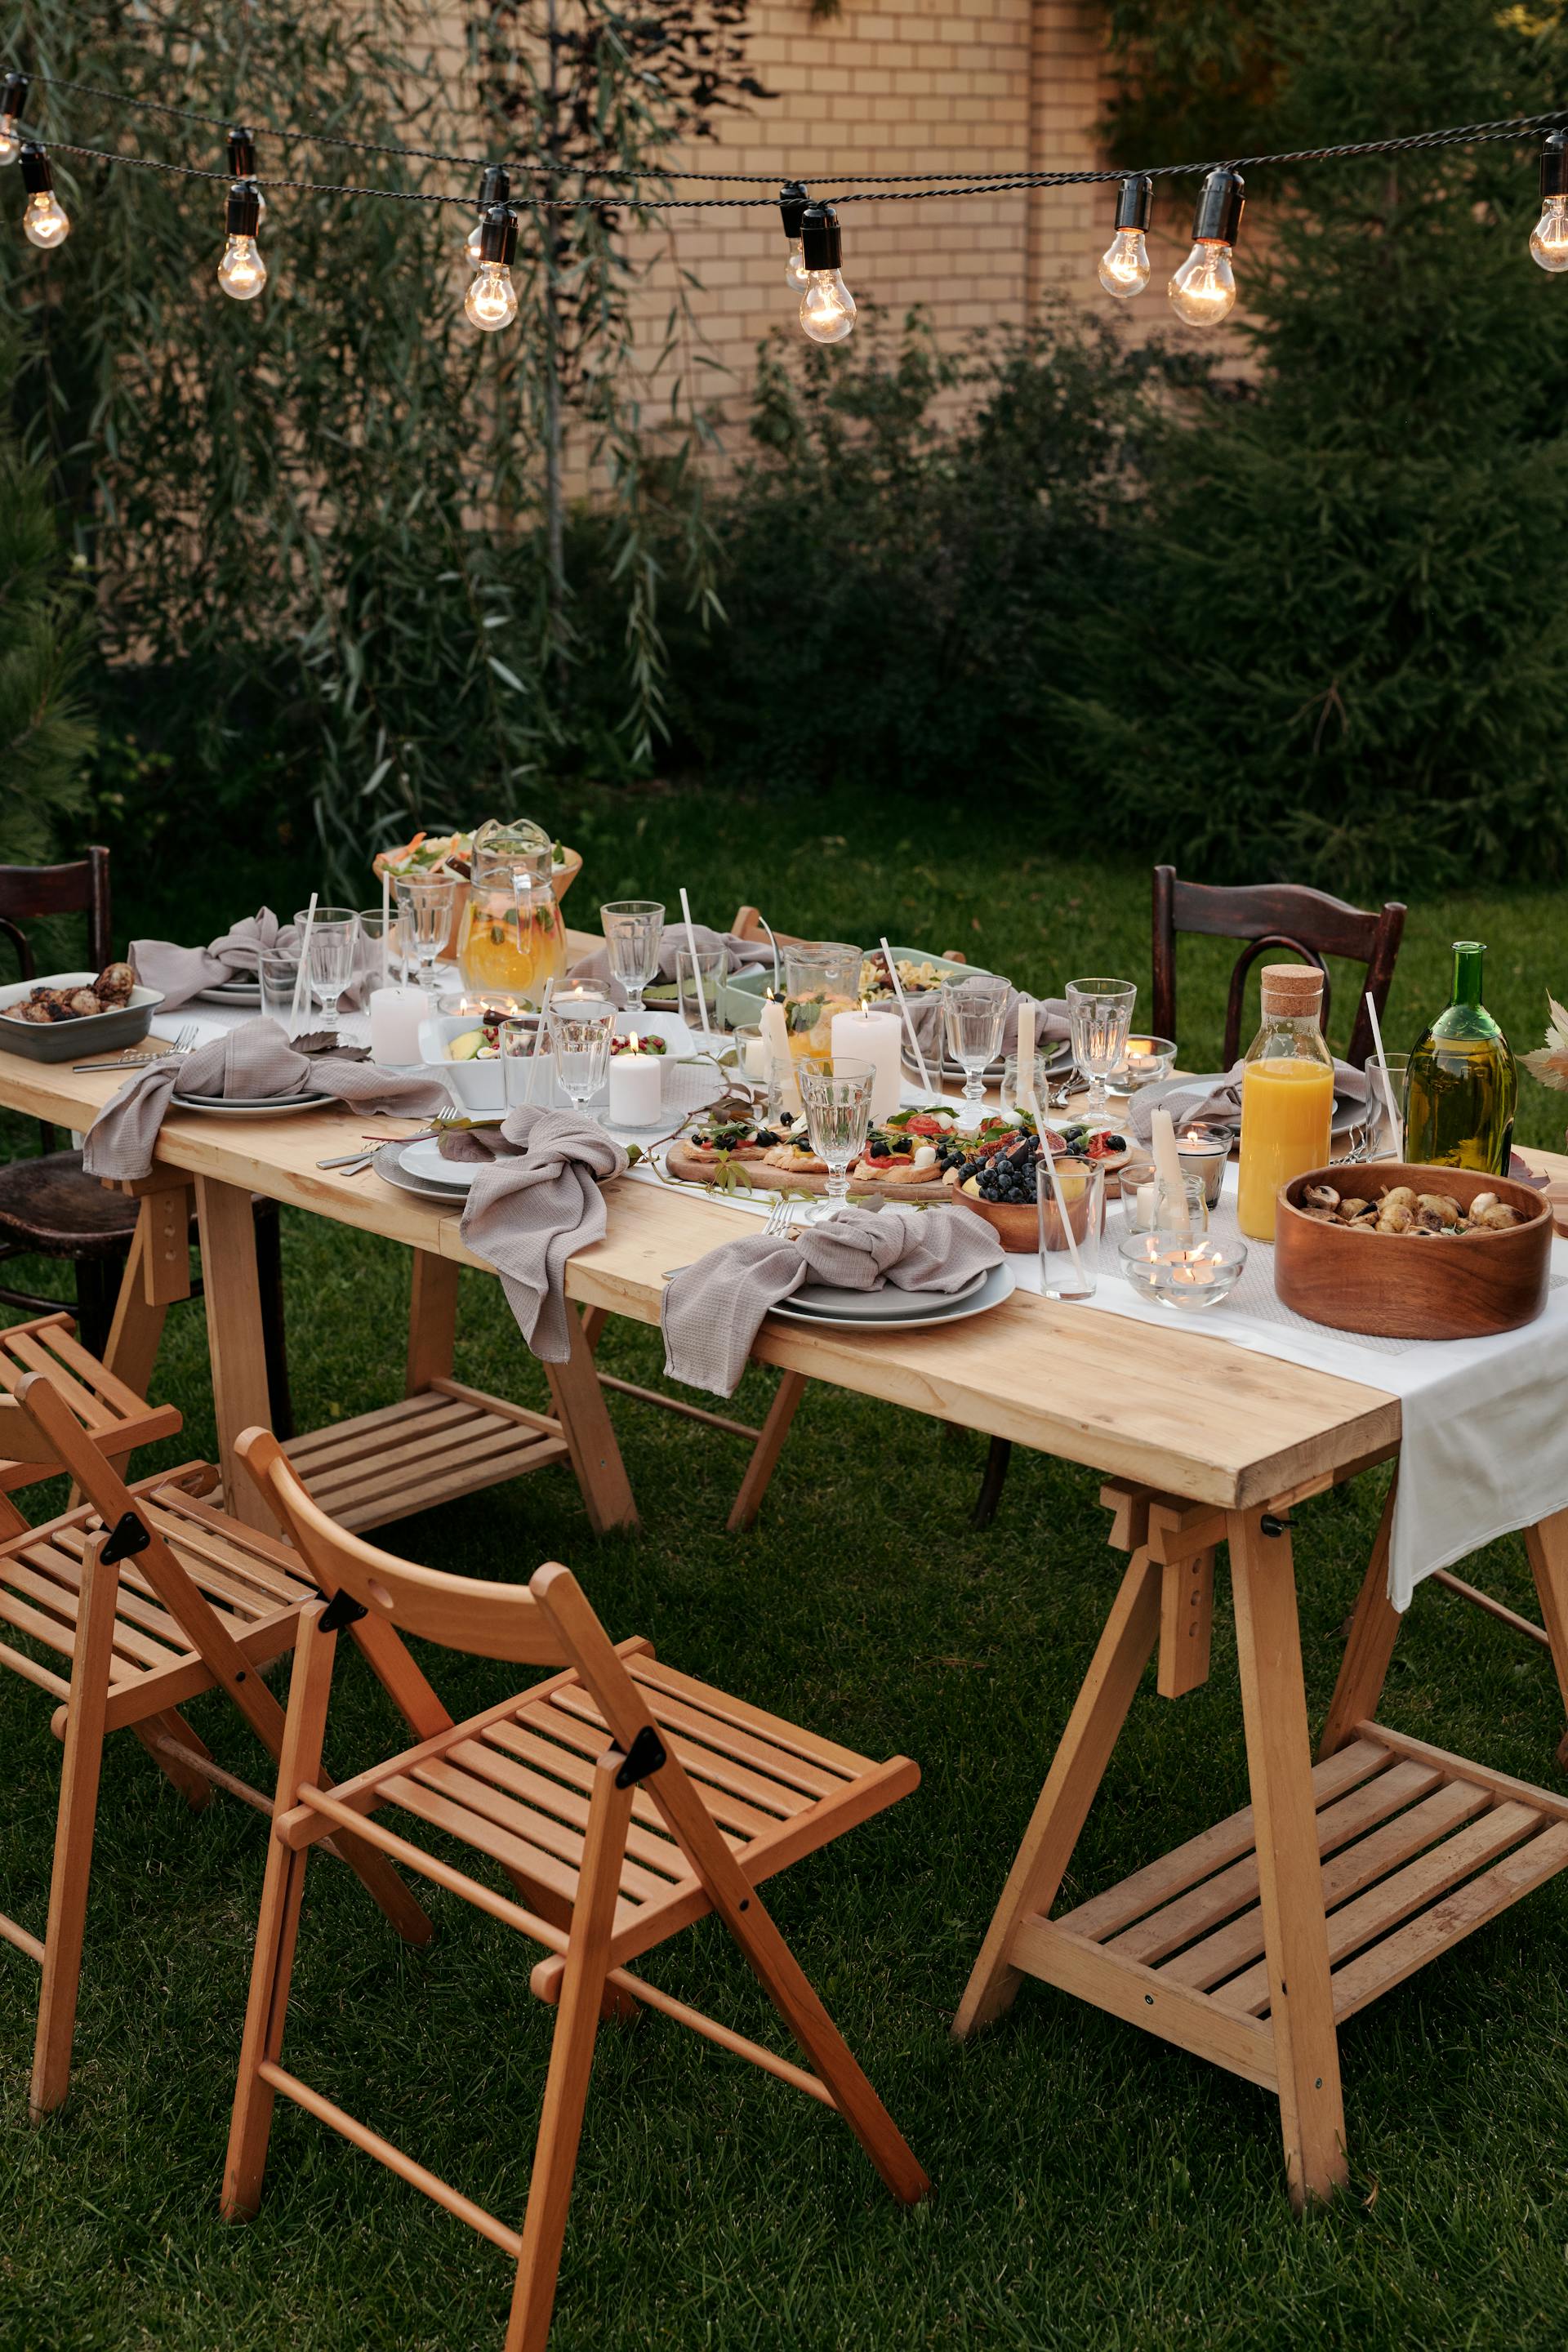 Une table pour un dîner en famille | Source : Pexels